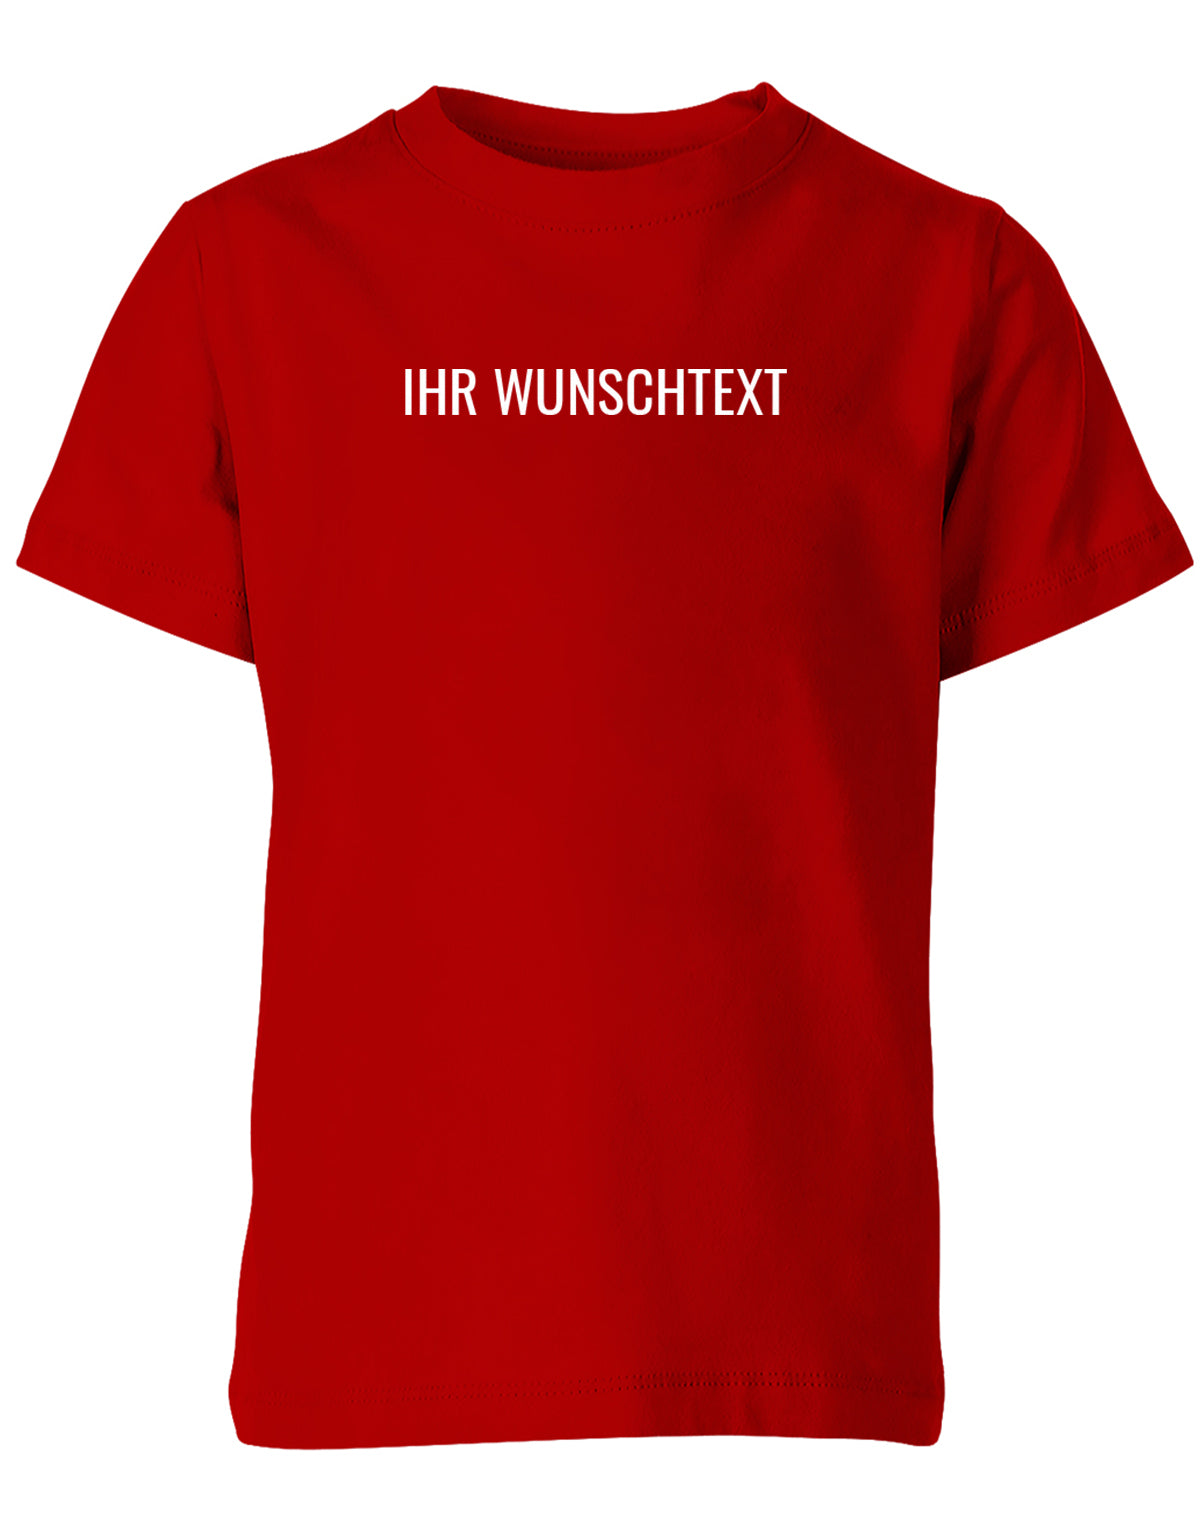 Kinder Tshirt mit Wunschtext.  Minimalistisches Design. Rot